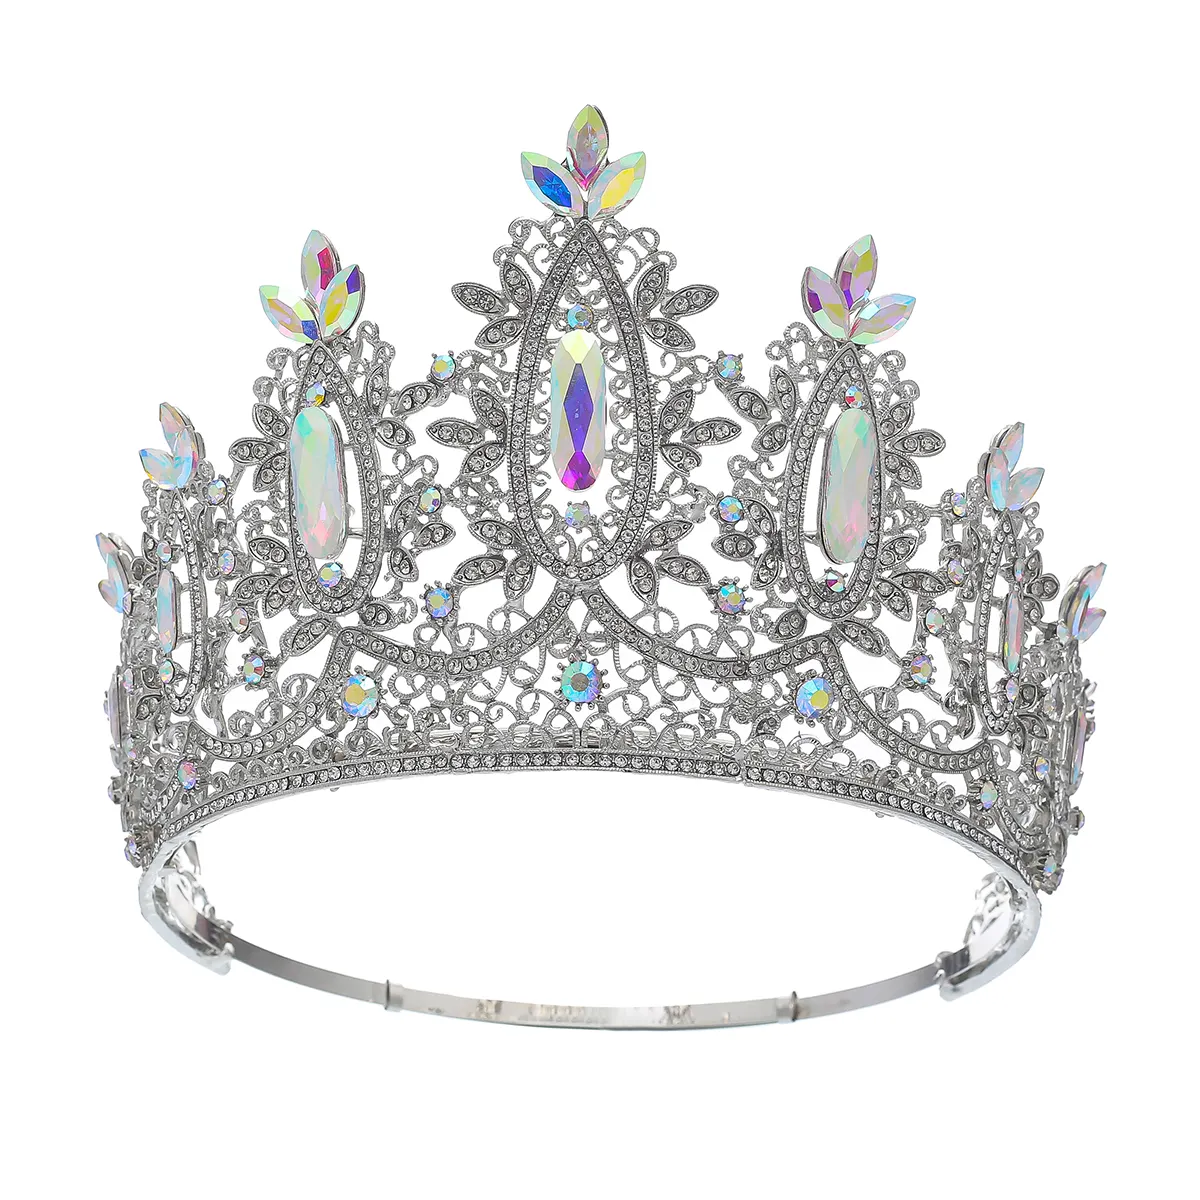 Nuovo concorso di bellezza 7 cristalli corona di sposa accessori per capelli barocca regina corona di fascia alta corona regolabile